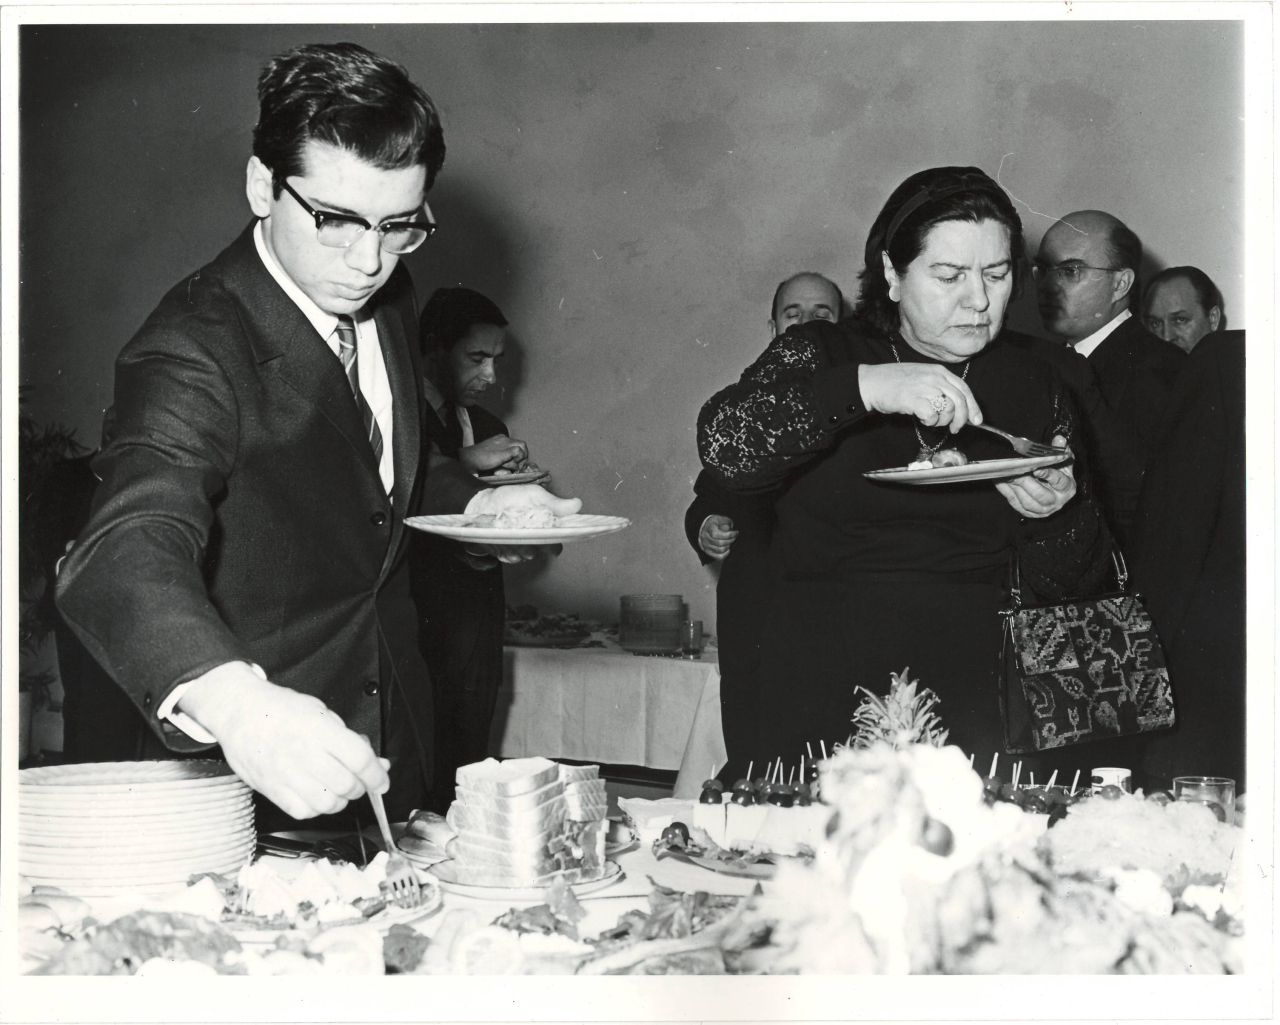 Լուսանկար.Կարեն Խաչատրյանը  (Ա. Խաչատրյանի որդին)  և Նինա Մակարովան (կինը) ՄԱԿ-ի գրասնյակում՝ ճաշկերույթի ժամանակ